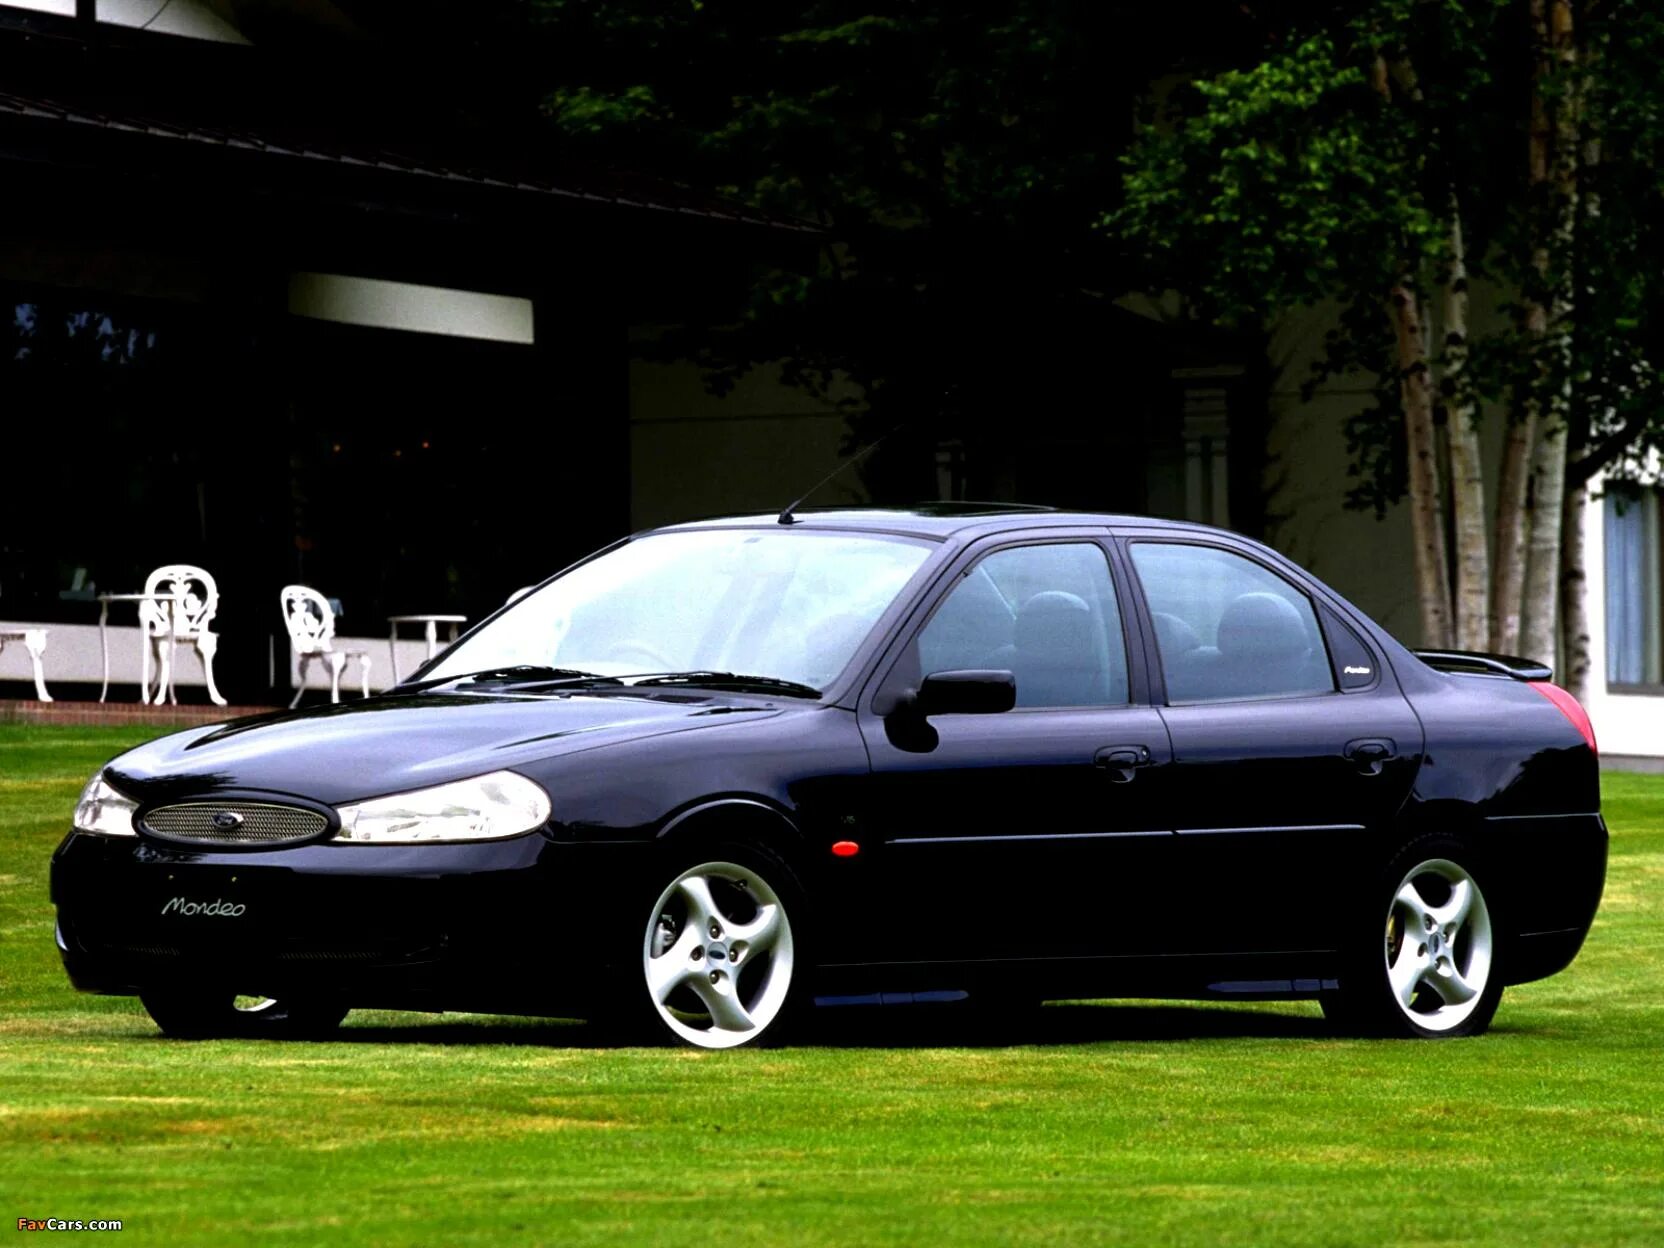 Форд мондео 1. Ford Mondeo 1996. Ford Mondeo 1996 седан. Ford Mondeo 1996-2000. Ford Mondeo 1.